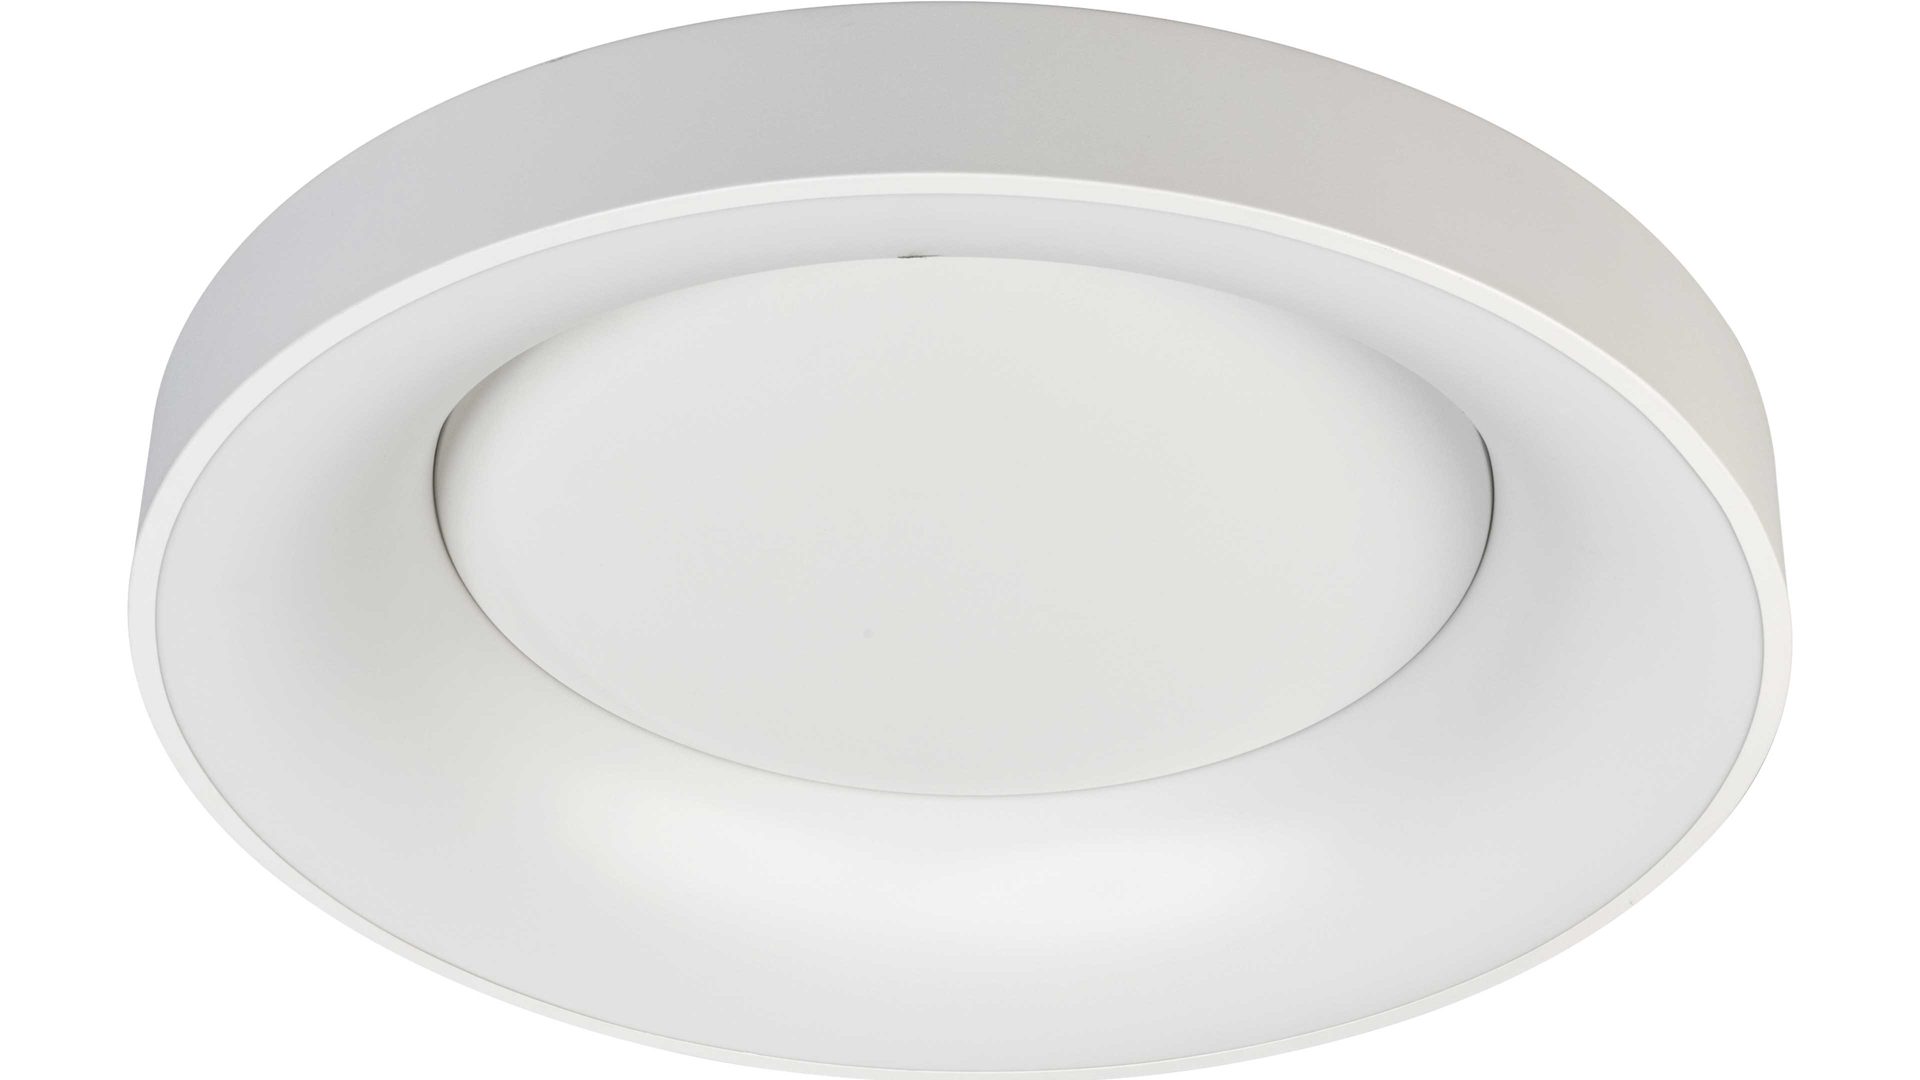 Deckenleuchte Wofi aus Kunststoff in Weiß LED-Deckenleuchte Cameron weißes Metall & weißer Kunststoff – Durchmesser ca. 58 cm